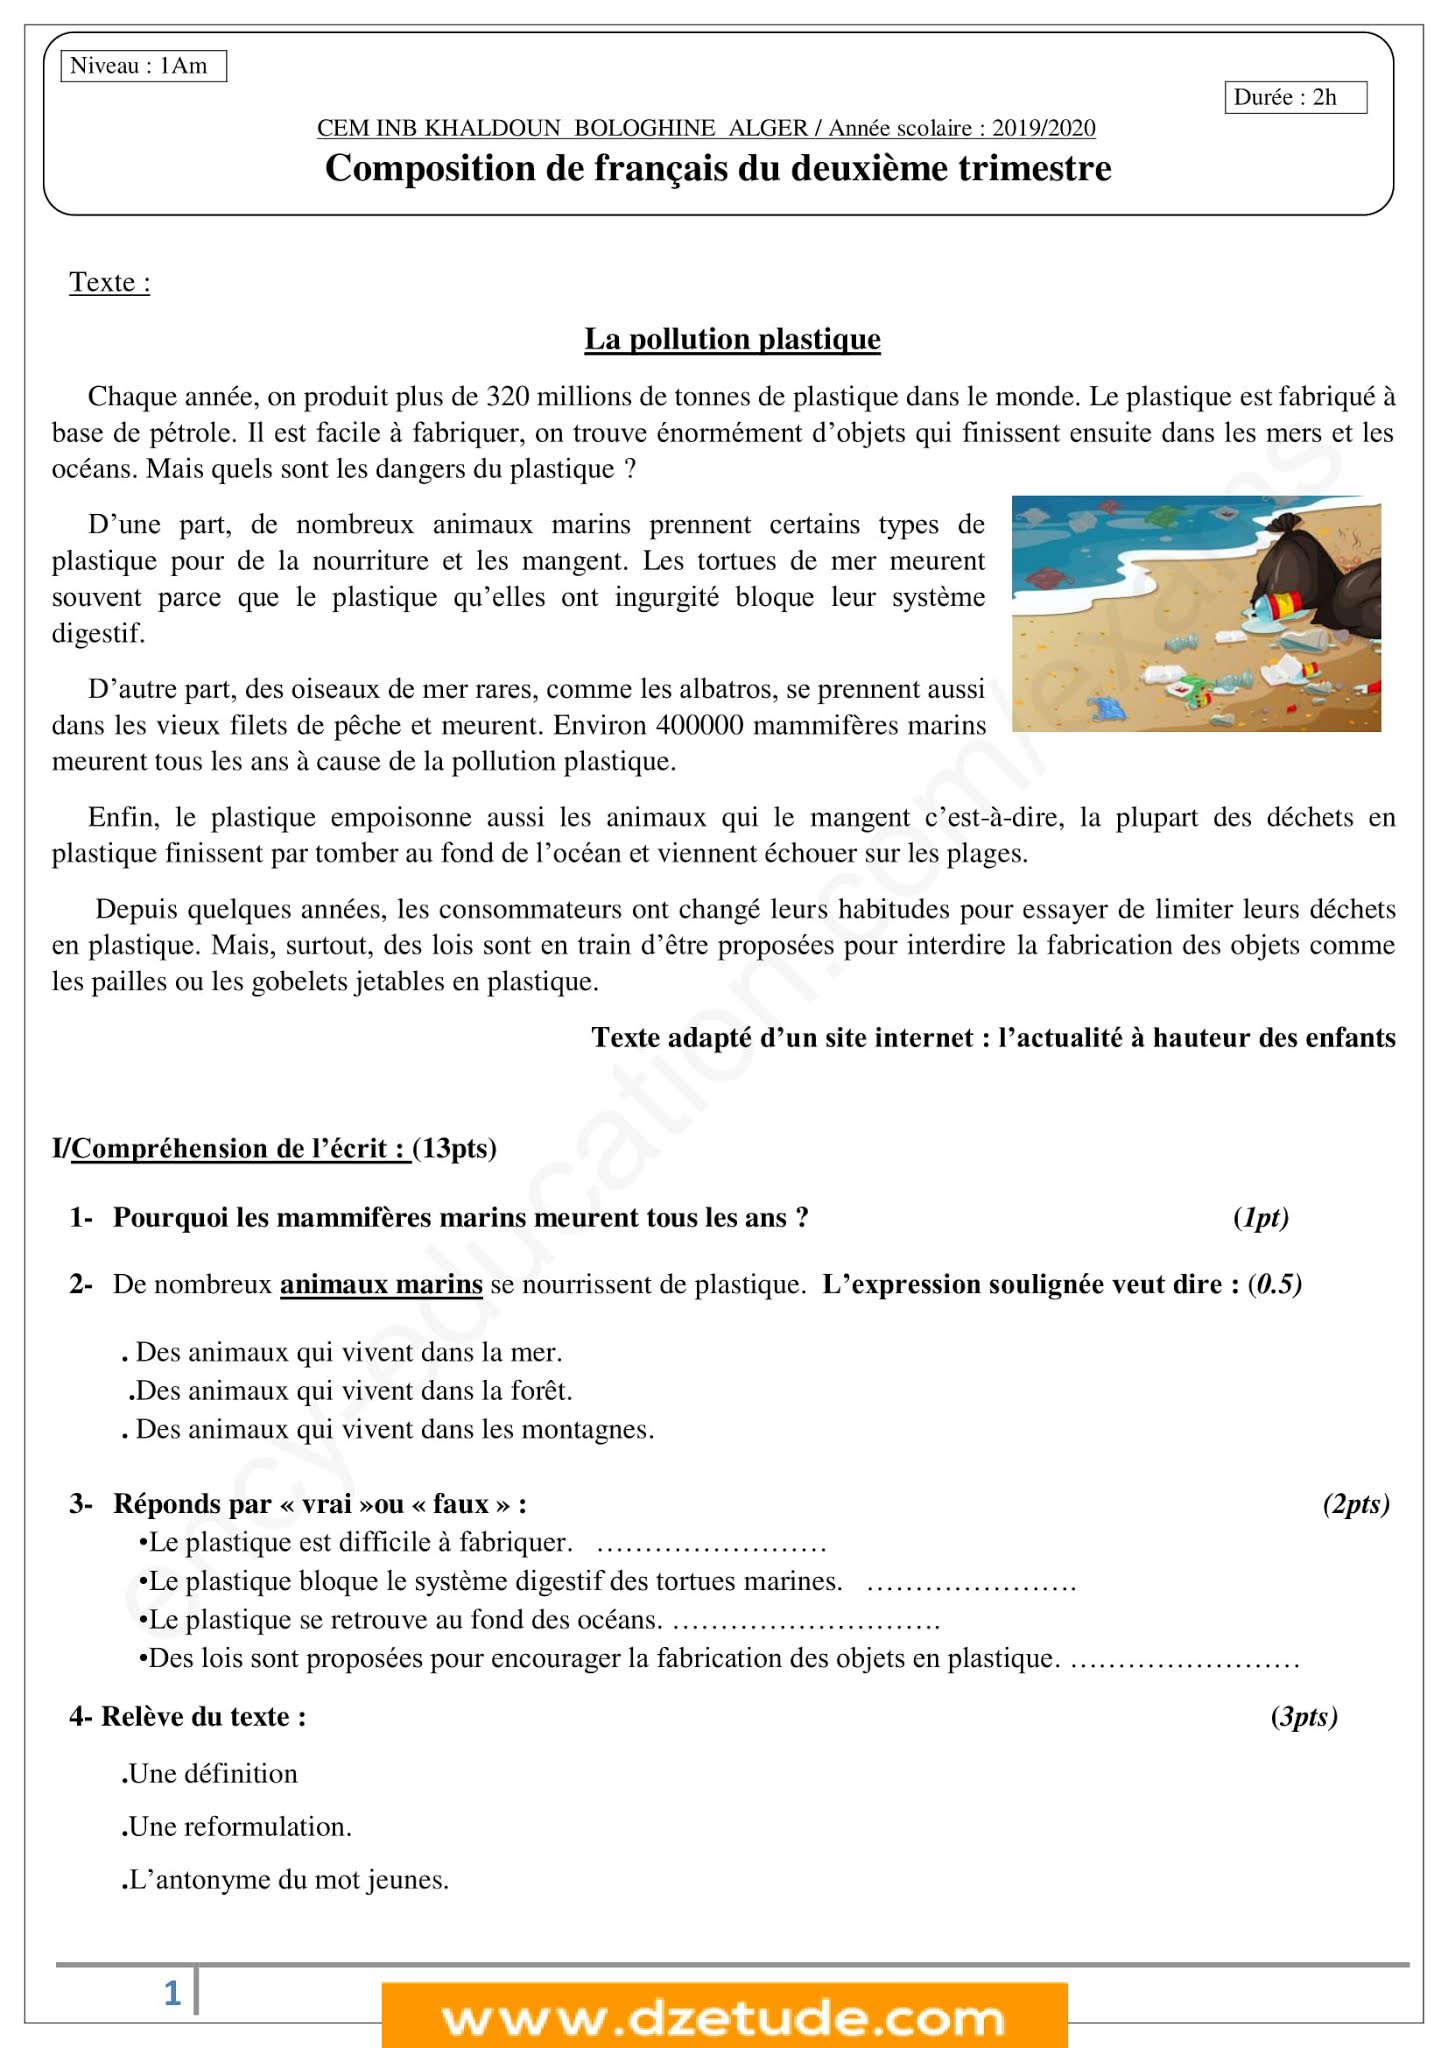 إختبار اللغة الفرنسية الفصل الثاني للسنة الأولى متوسط - الجيل الثاني نموذج 4